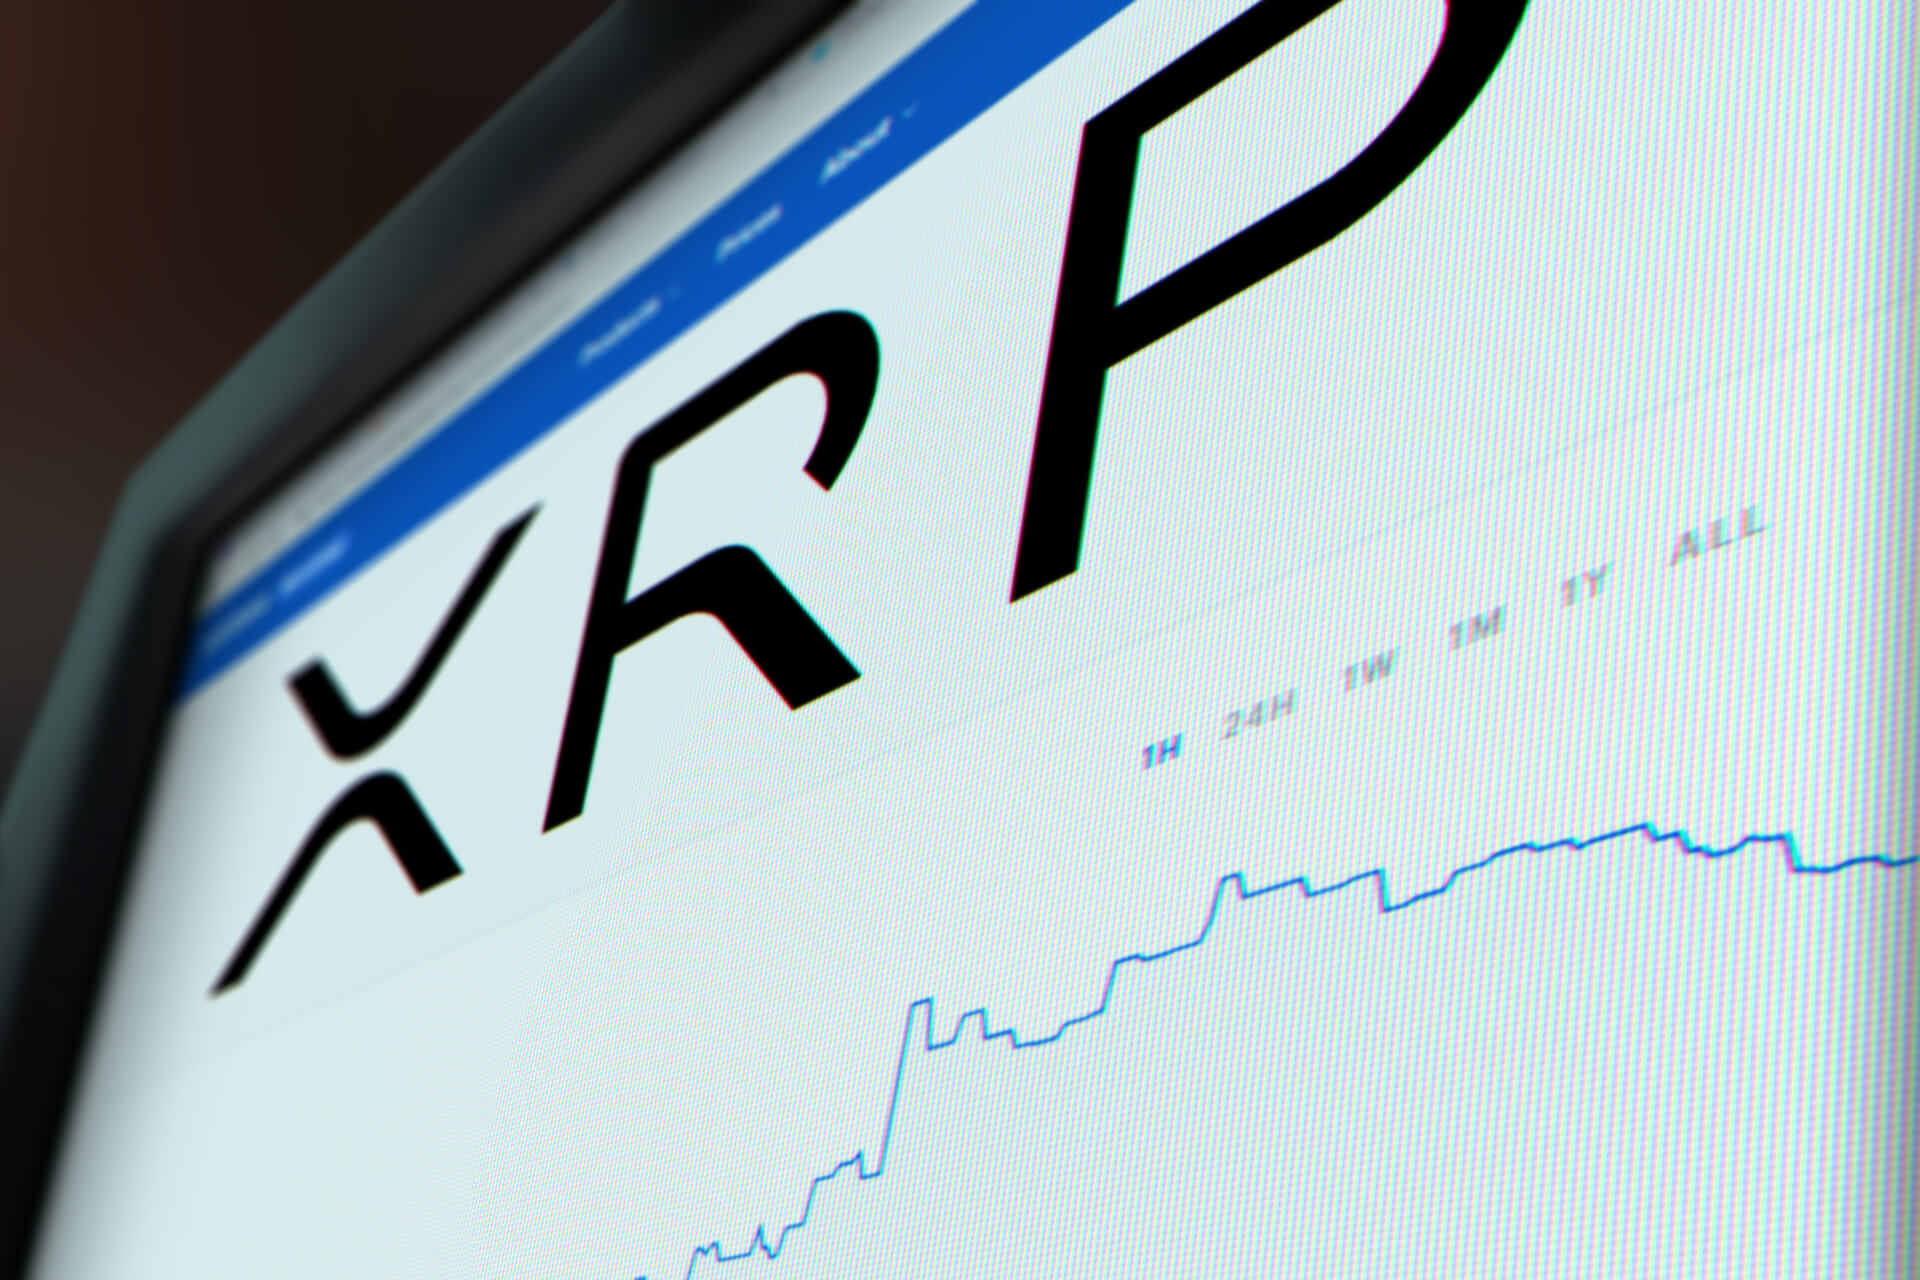 XRP price chart monitor screenshot free image download